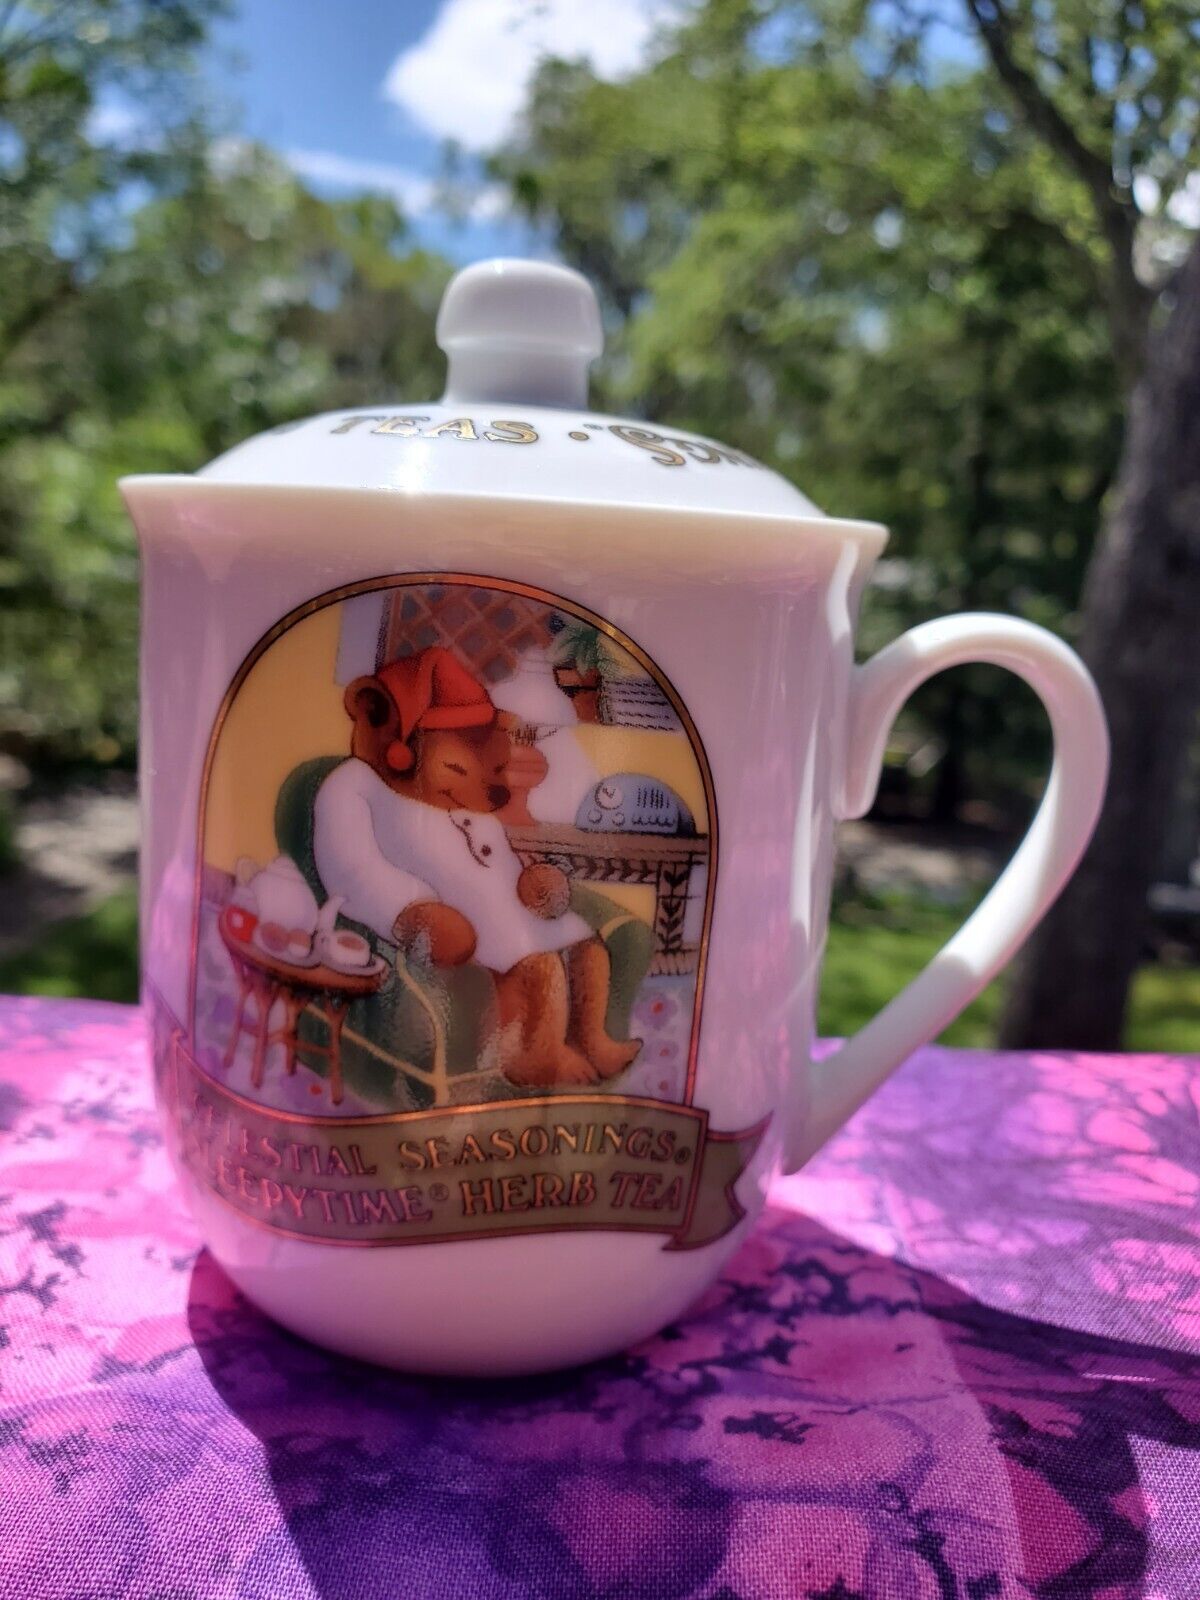 1985 Vintage Tea Mug Lidded Sleepytime Bears Celestial Seasonings Herb Tea Japan